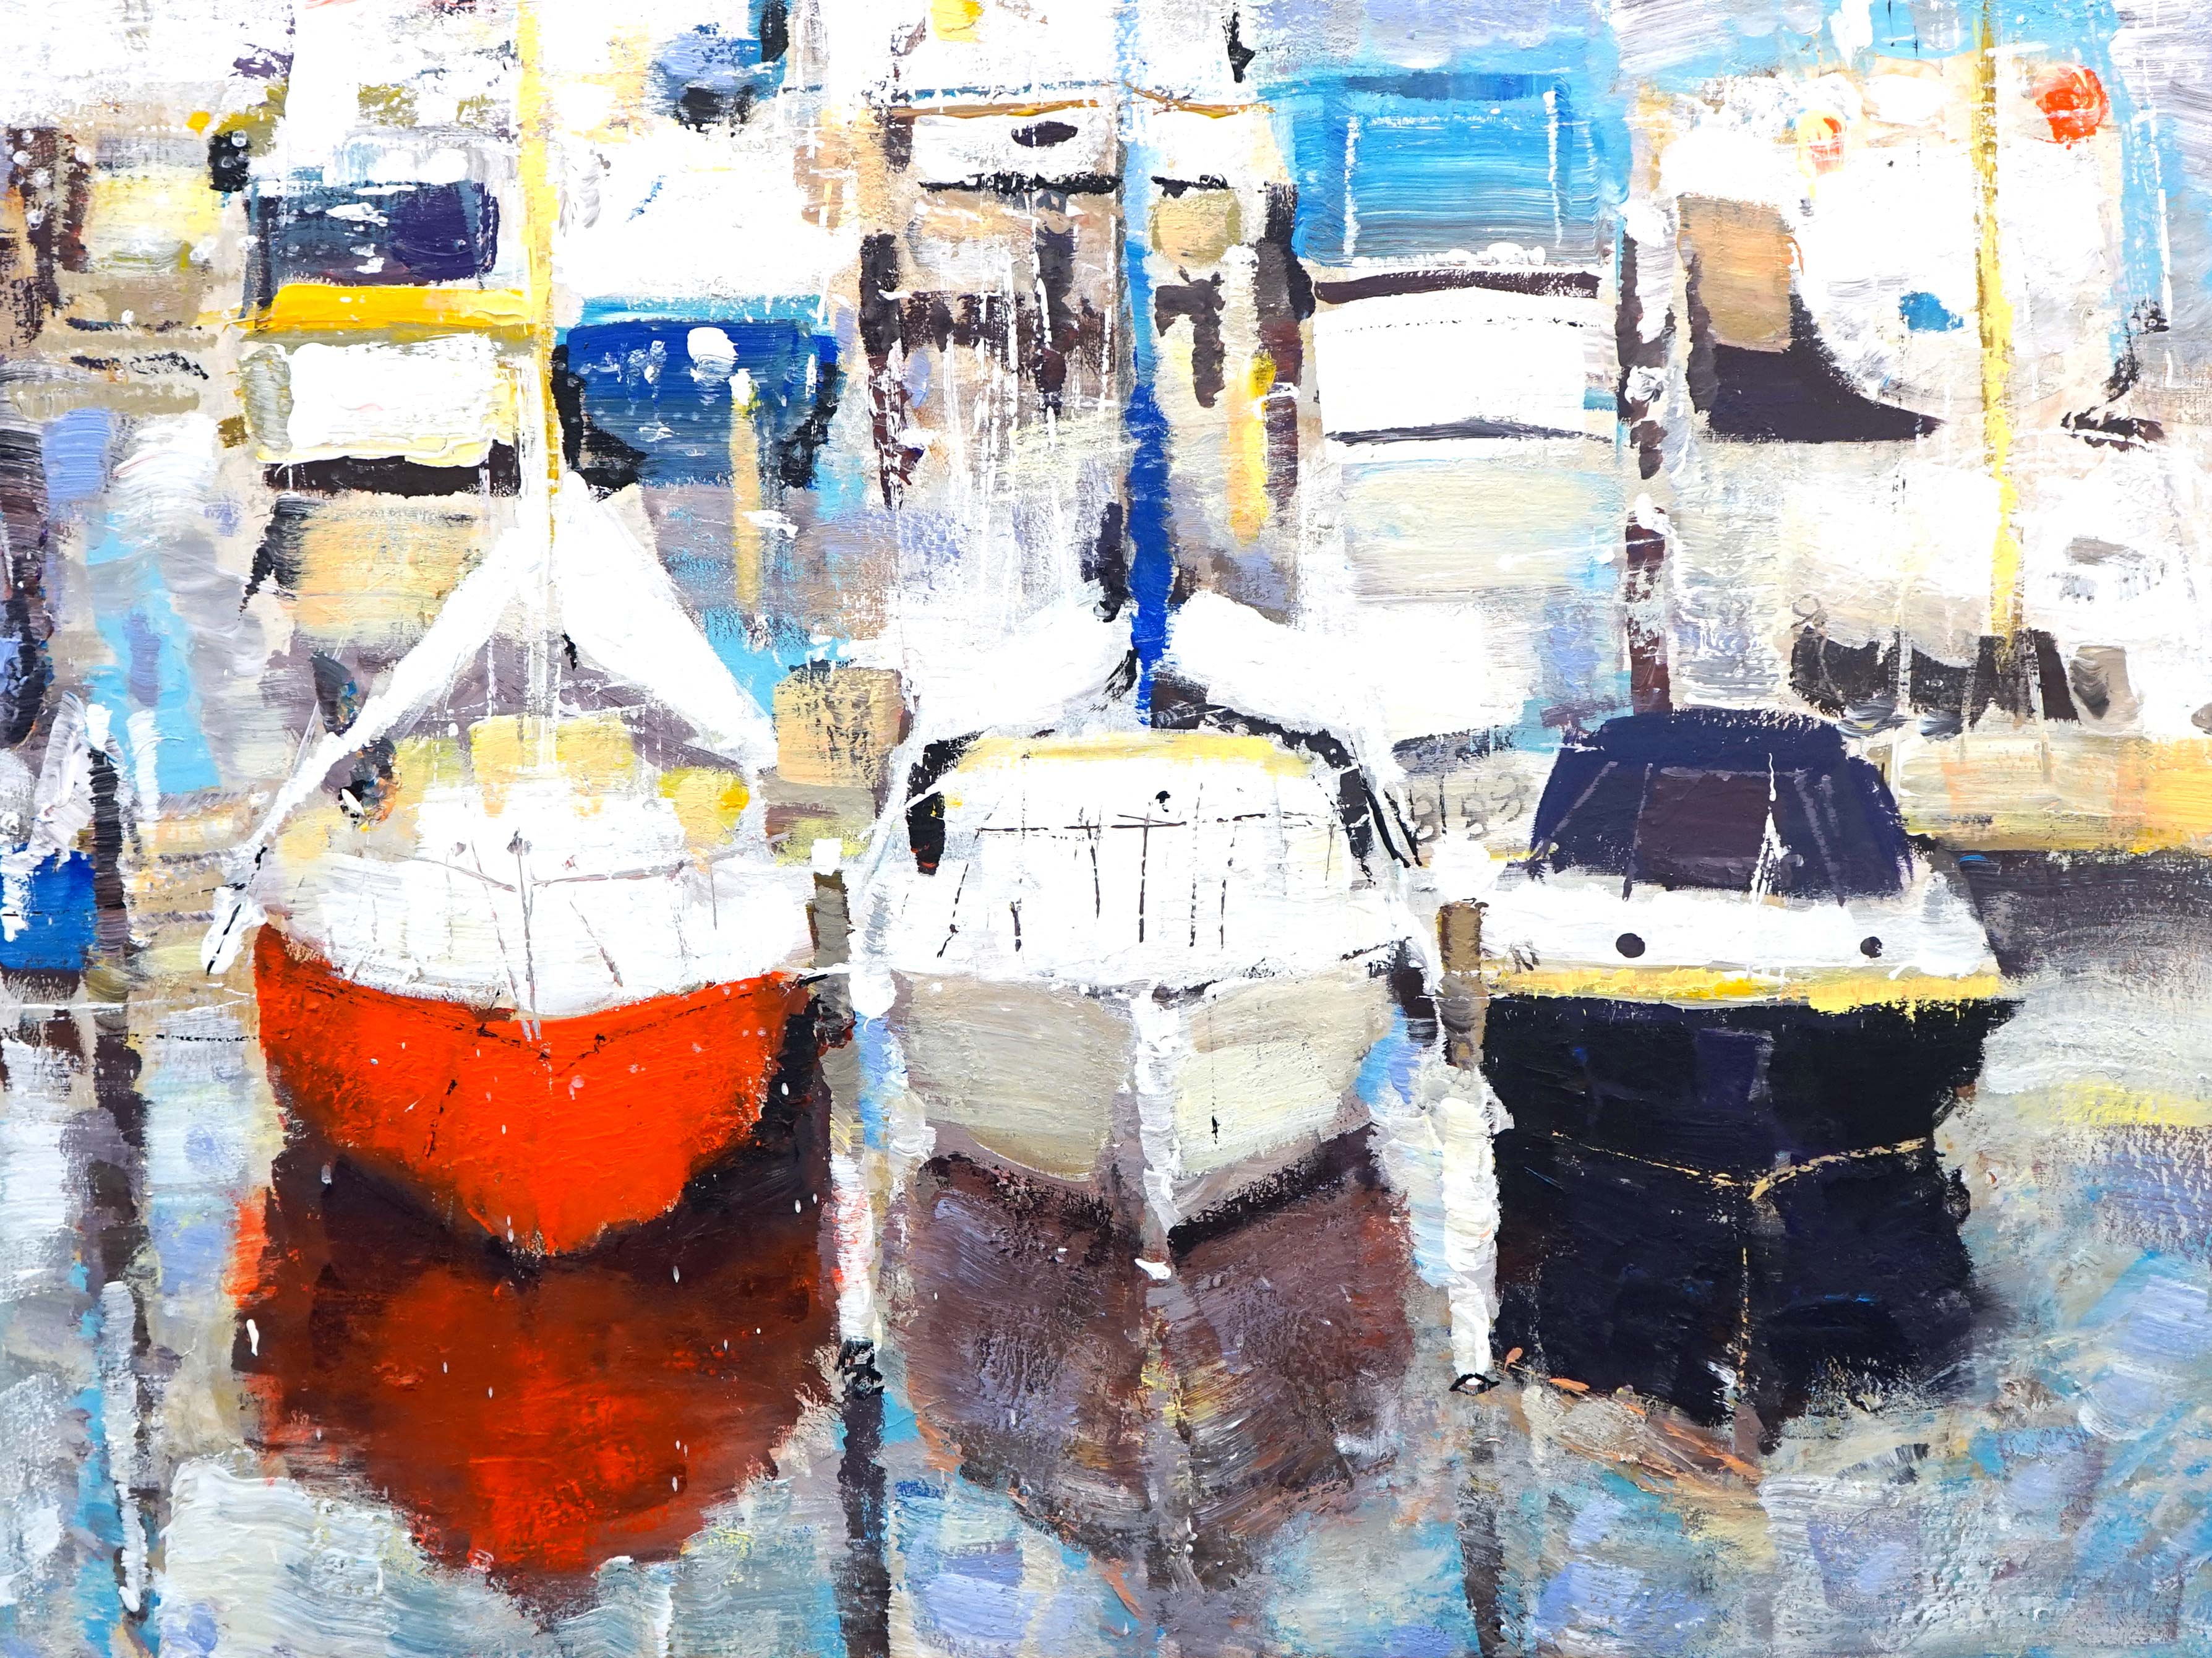 Yachts. Middelburg - 1, Yuri Pervushin, Buy the painting Acrylic